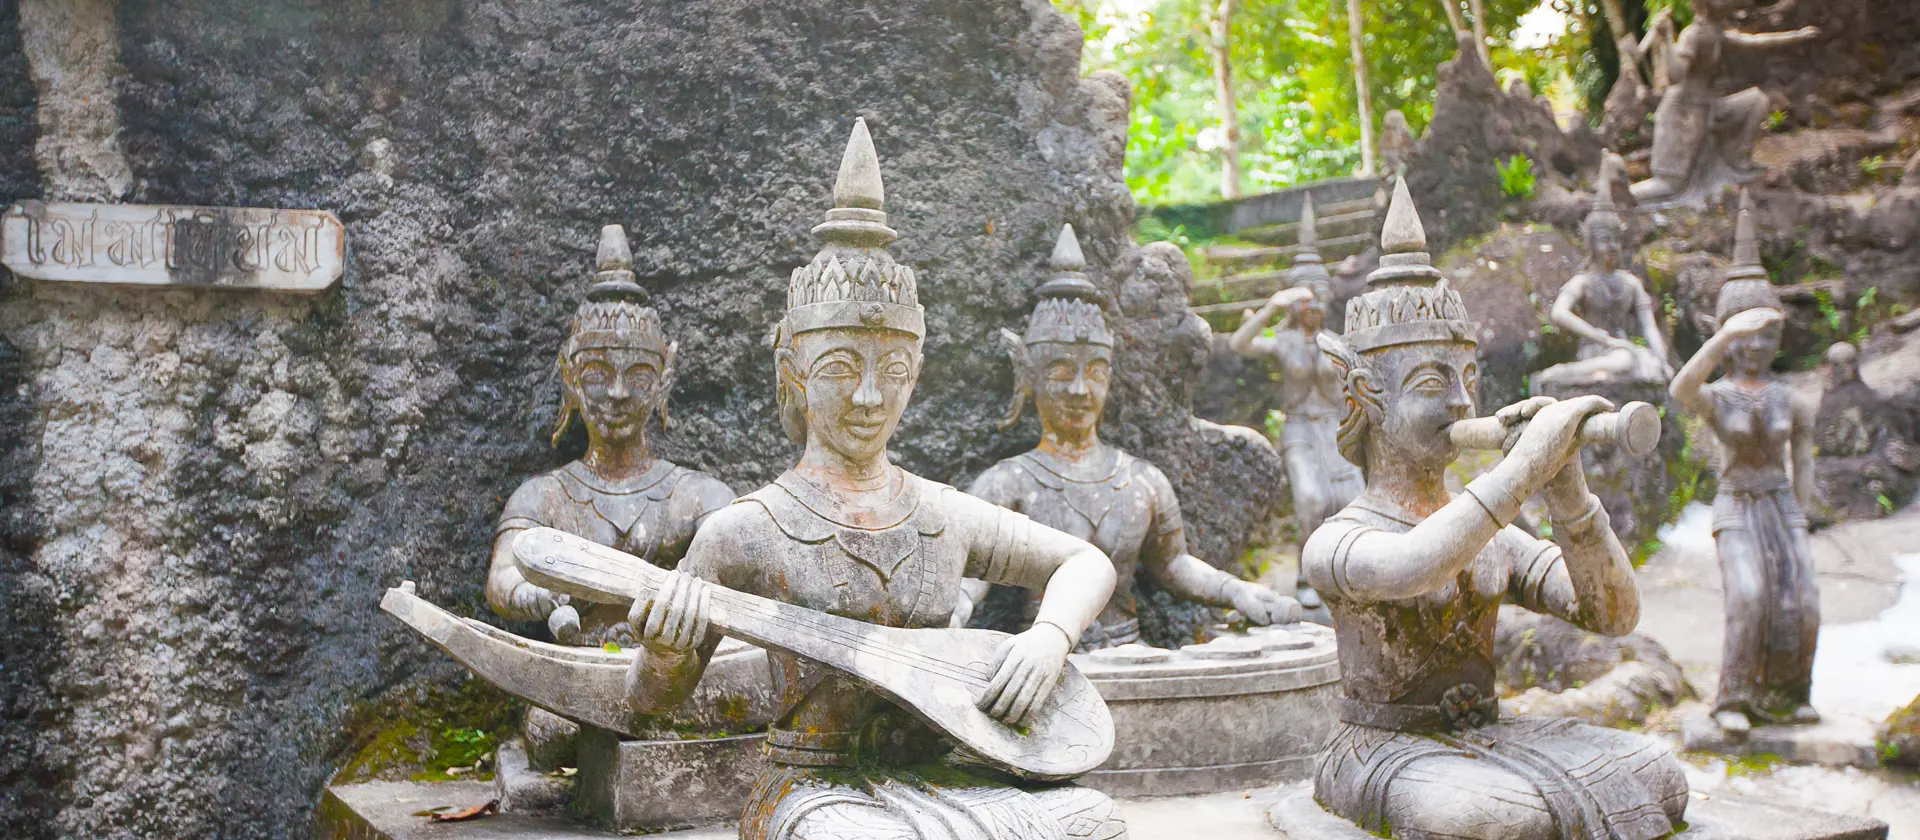 shutterstock_253325287 Tanim magic Buddha garden, Koh Samui island, Thailand.jpg